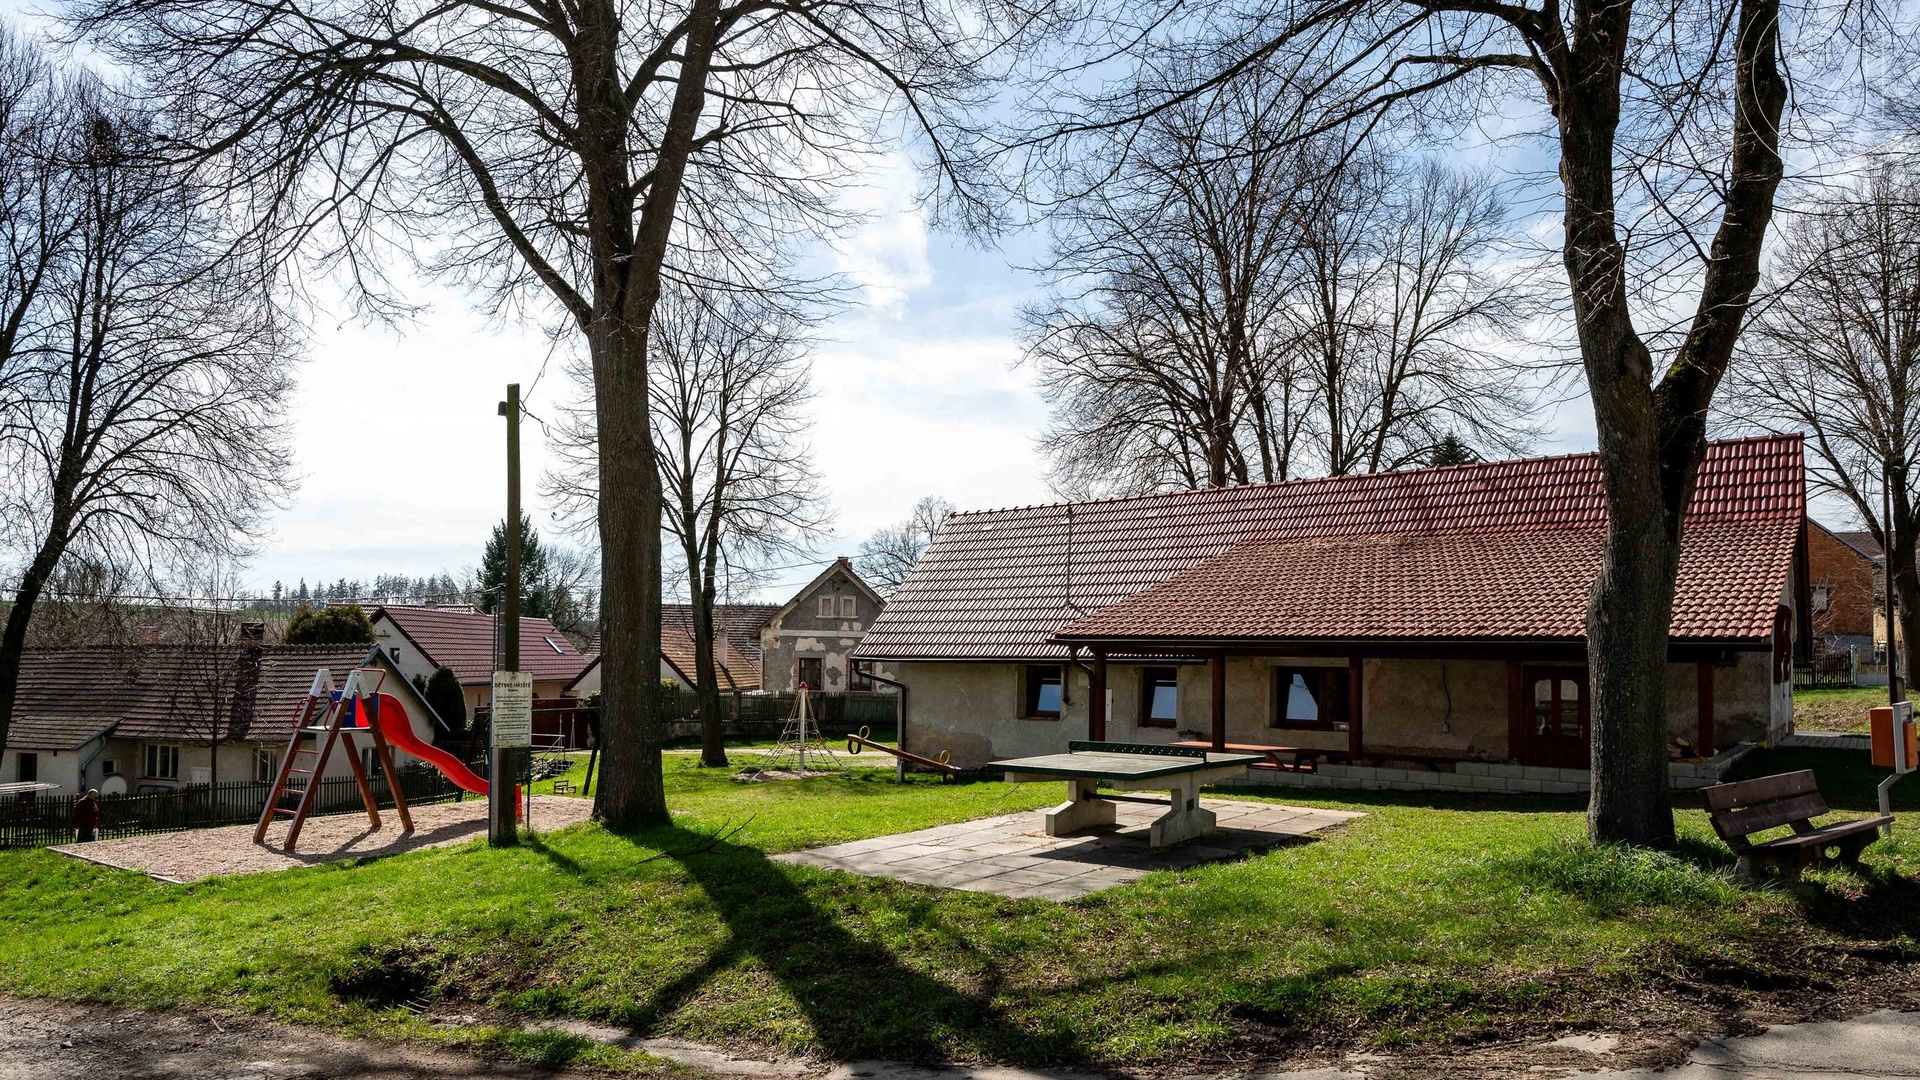 Prodej rodinného domu před rekonstrukcí s hospodářským stavením a velkým potencionálem, 130 m²  podlahové plochy a pozemek 1190 m² - Vlašim - Znosim